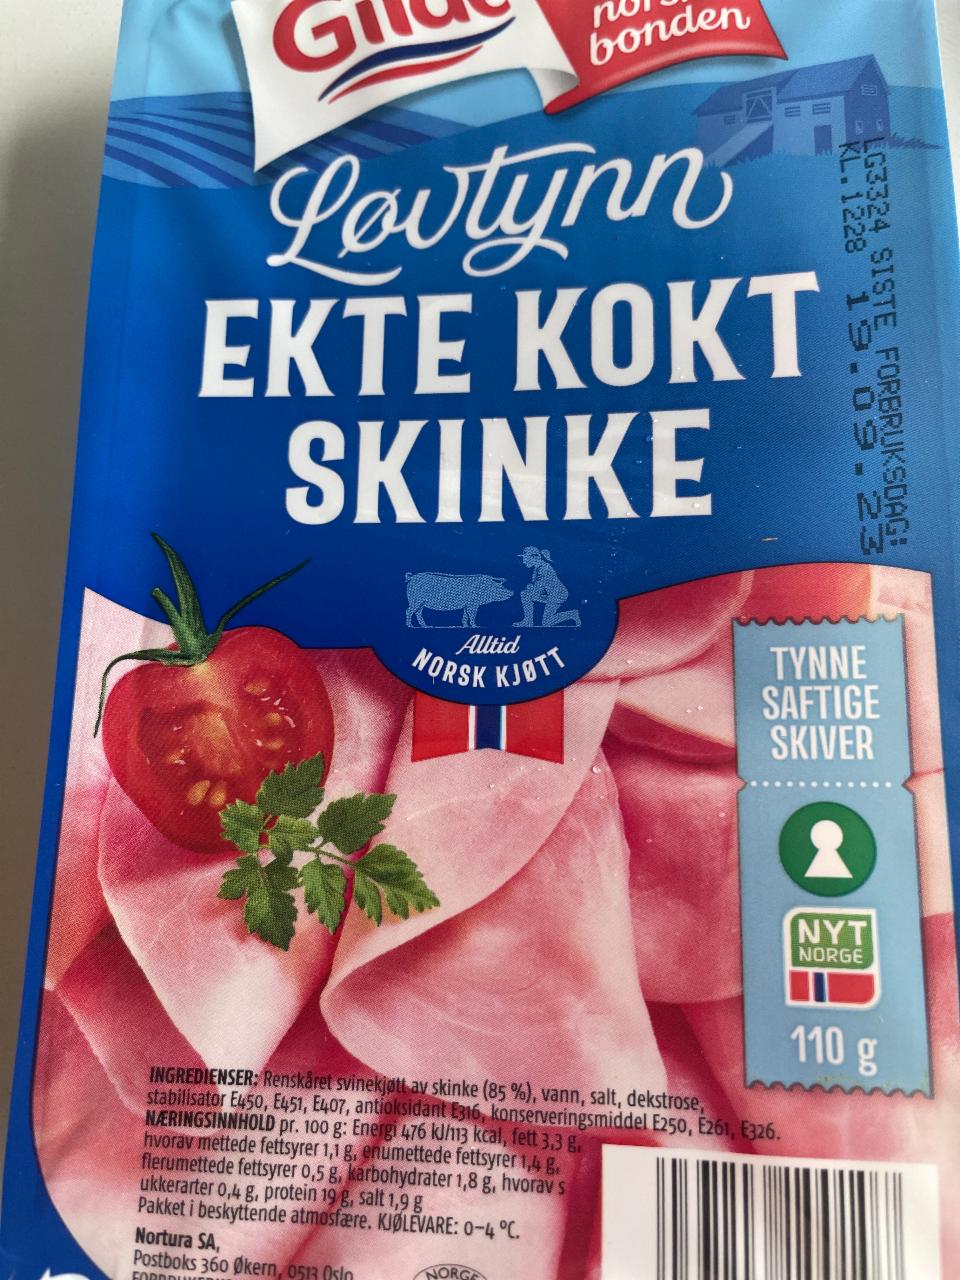 Fotografie - Løvtynn Ekte Kokt Skinke Gilde